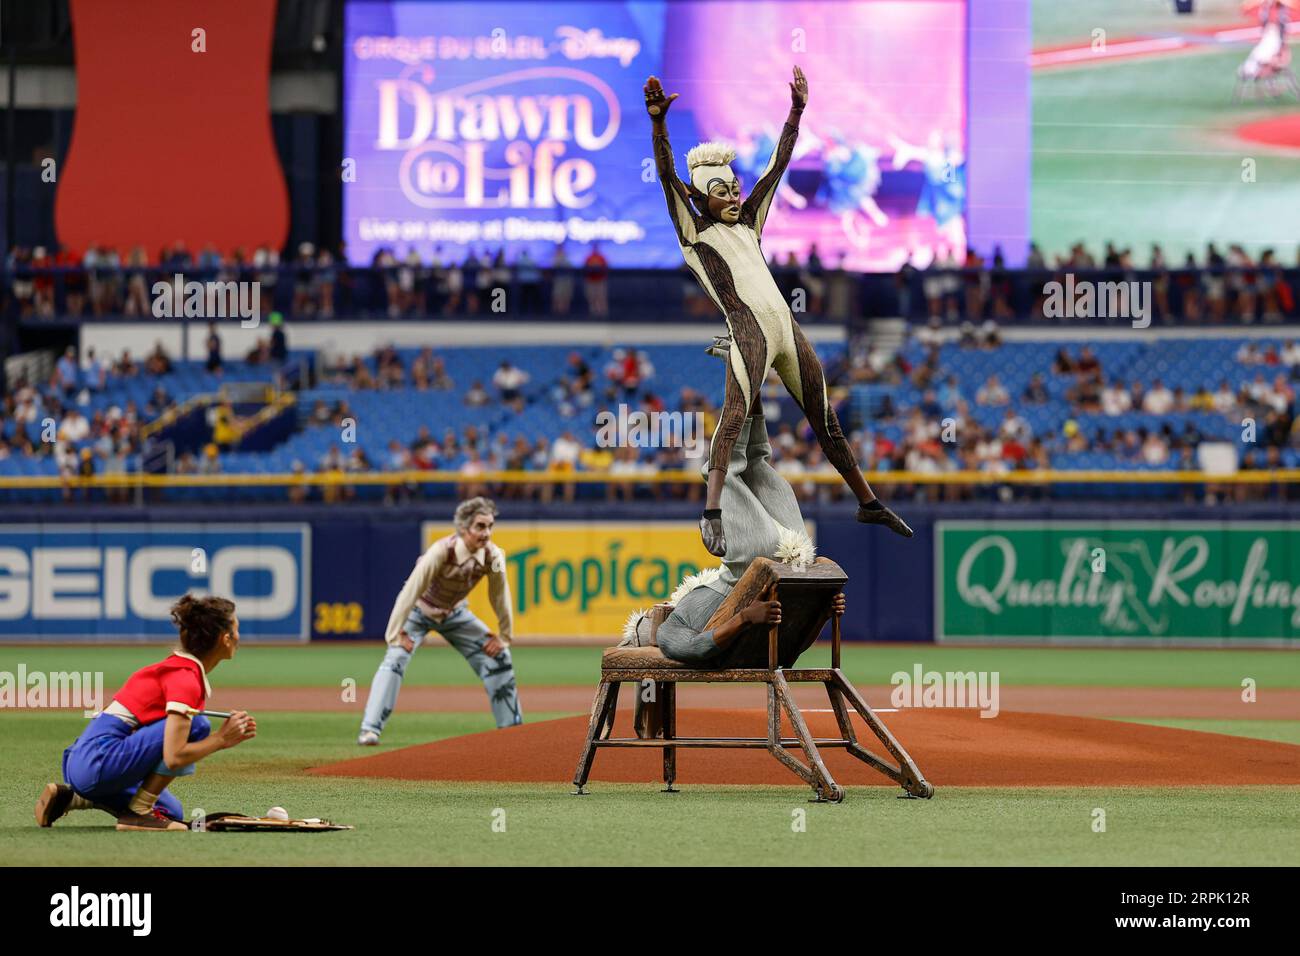 St. Petersburg, FL USA; Members of Drawn to Life, präsentiert vom Cirque du Soleil, gab vor einem MLB-Spiel zwischen den Tampons eine besondere Leistung Stockfoto